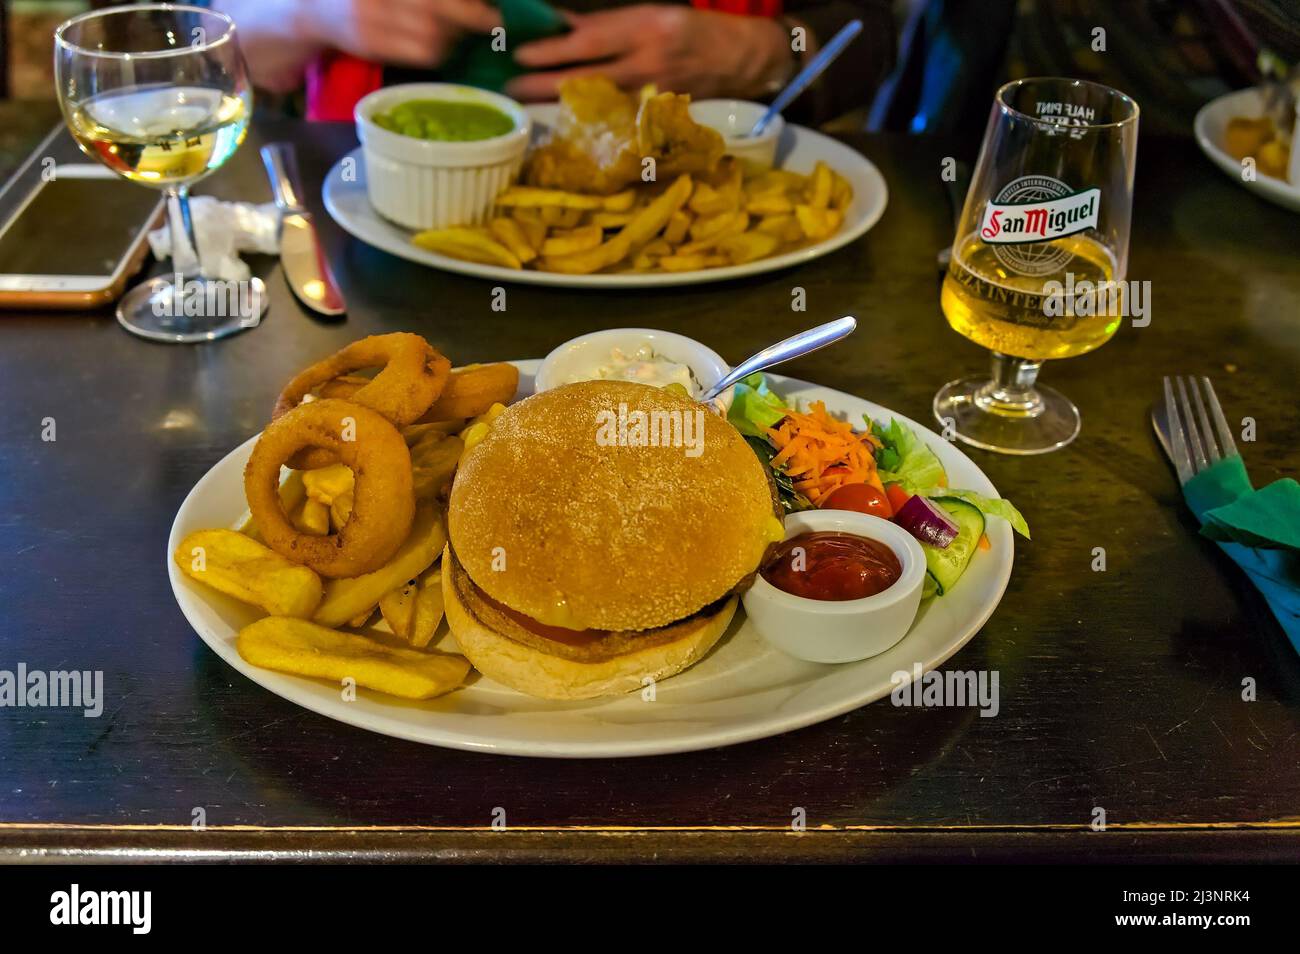 Placez le décor avec un repas hamburger & chips sur une assiette dans un restaurant Banque D'Images